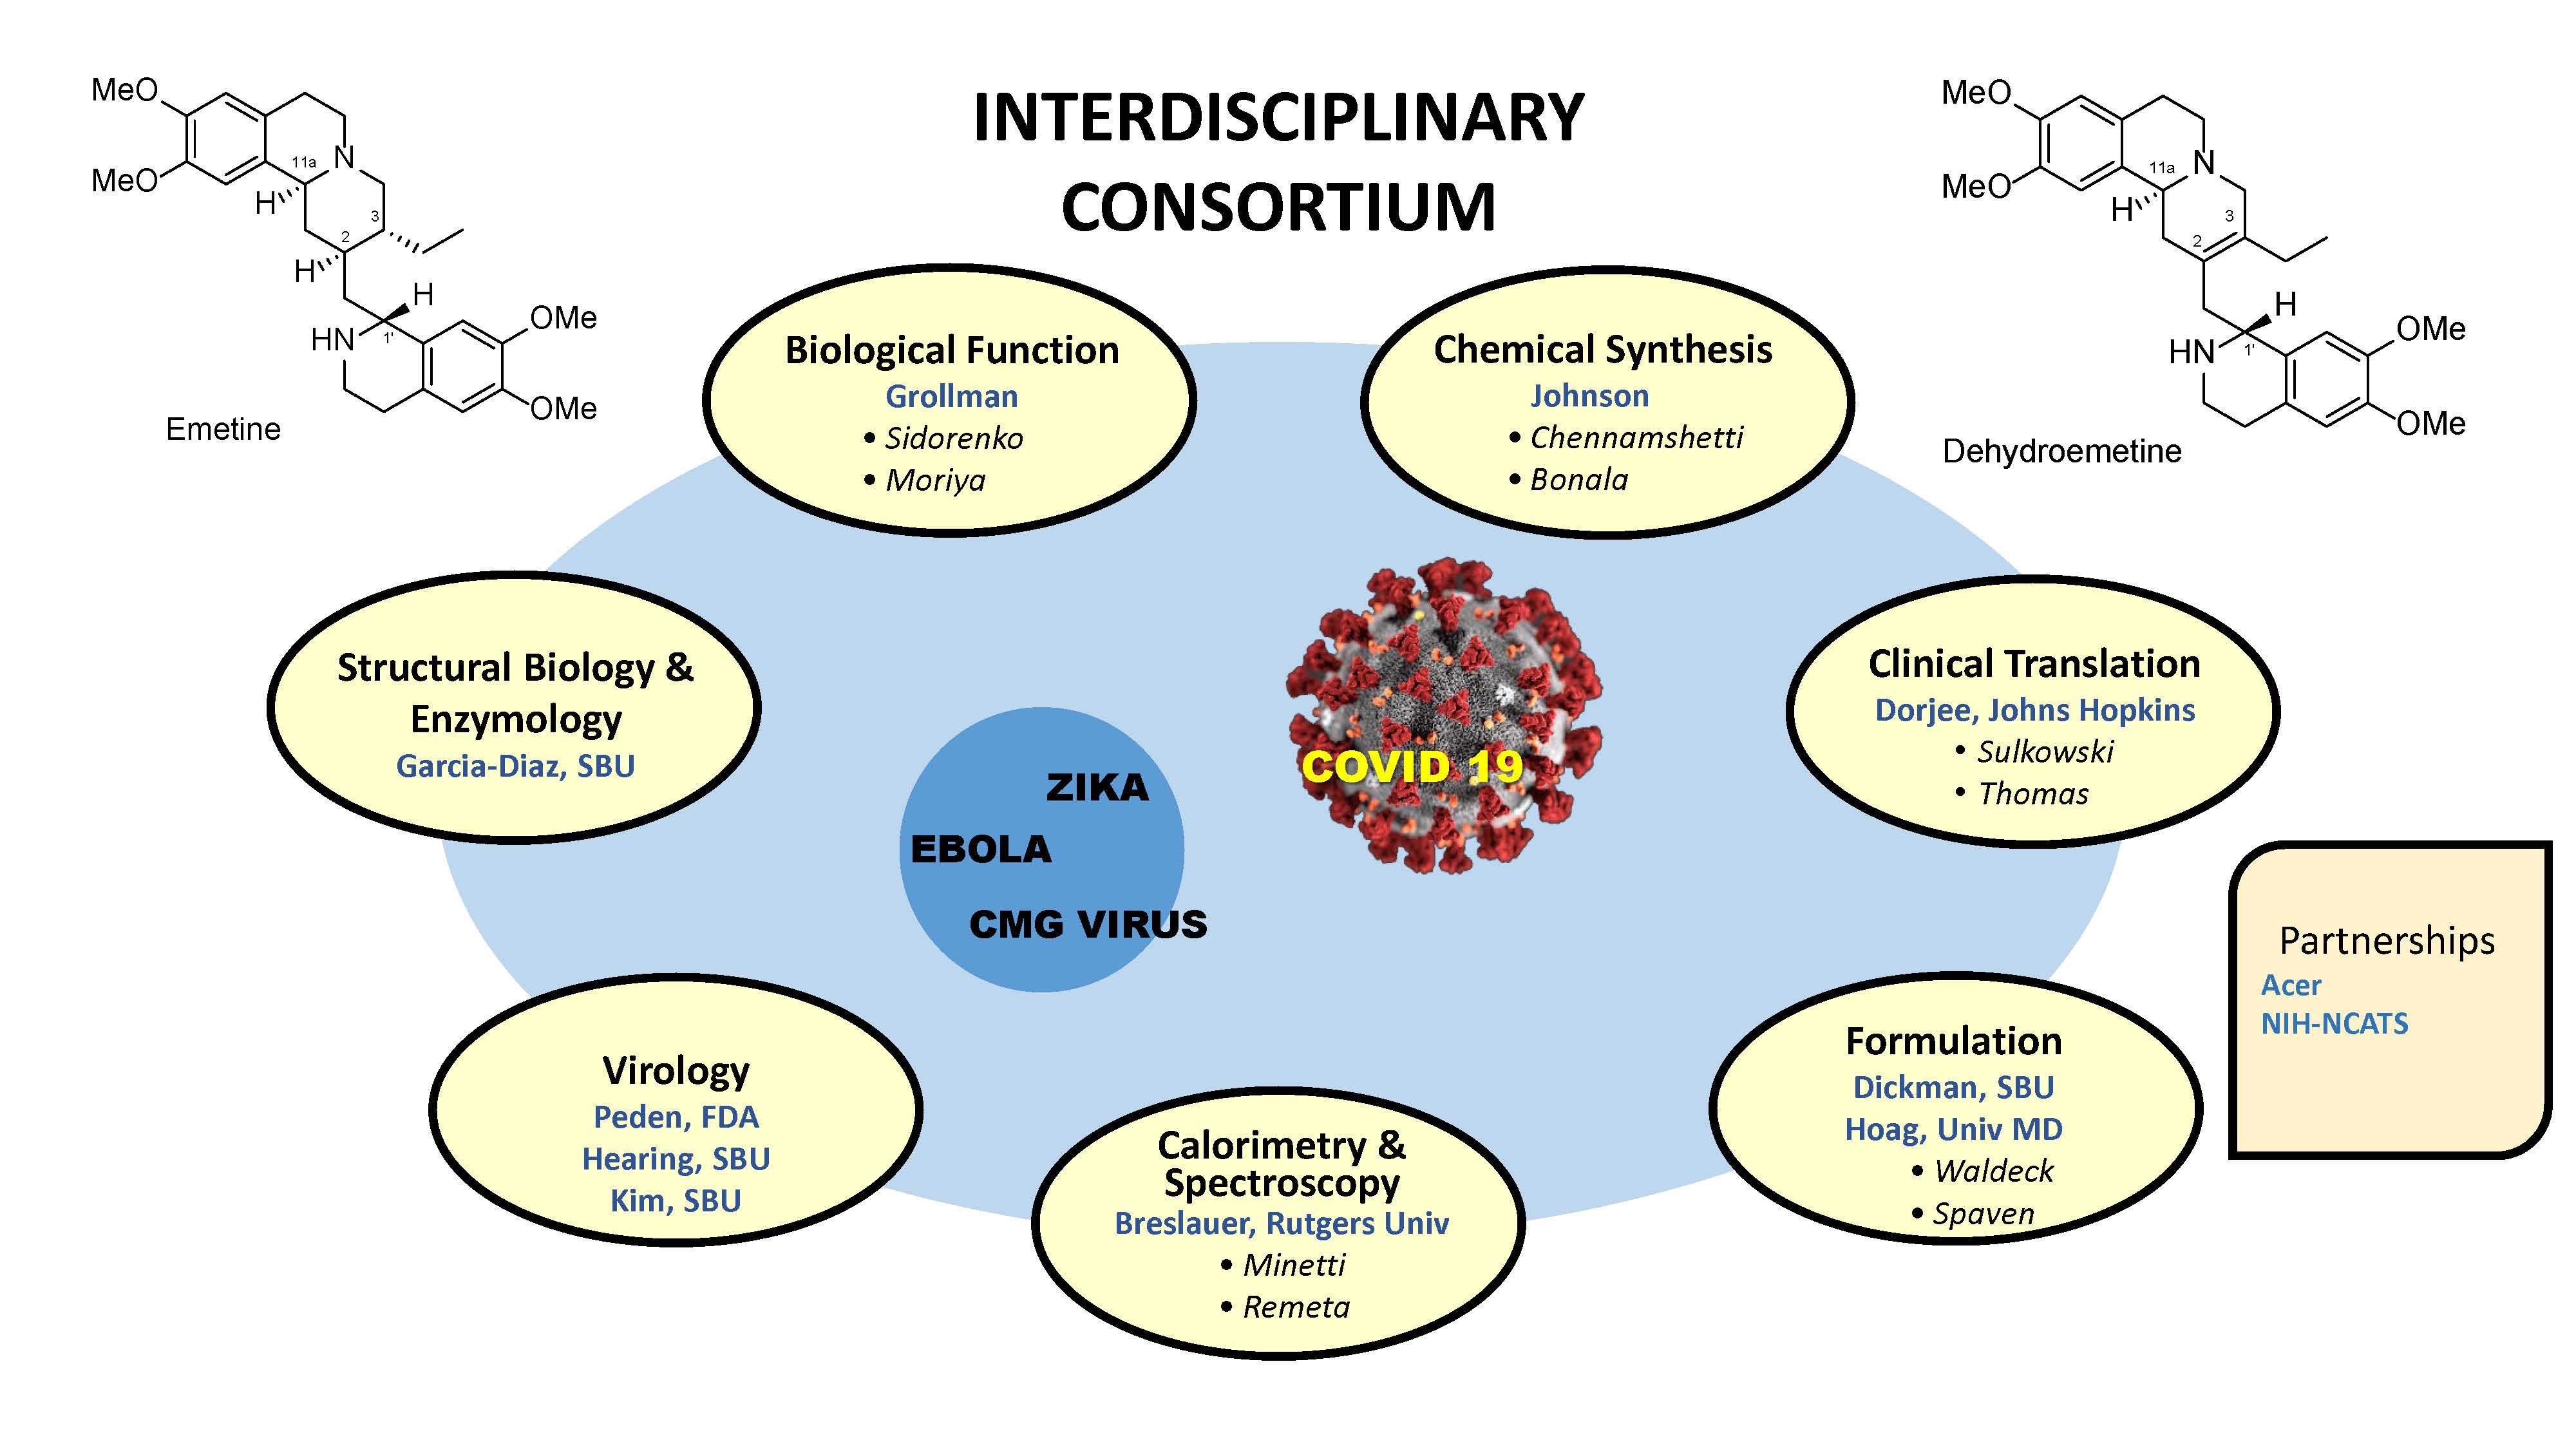 diagram of interdisciplinary consortium